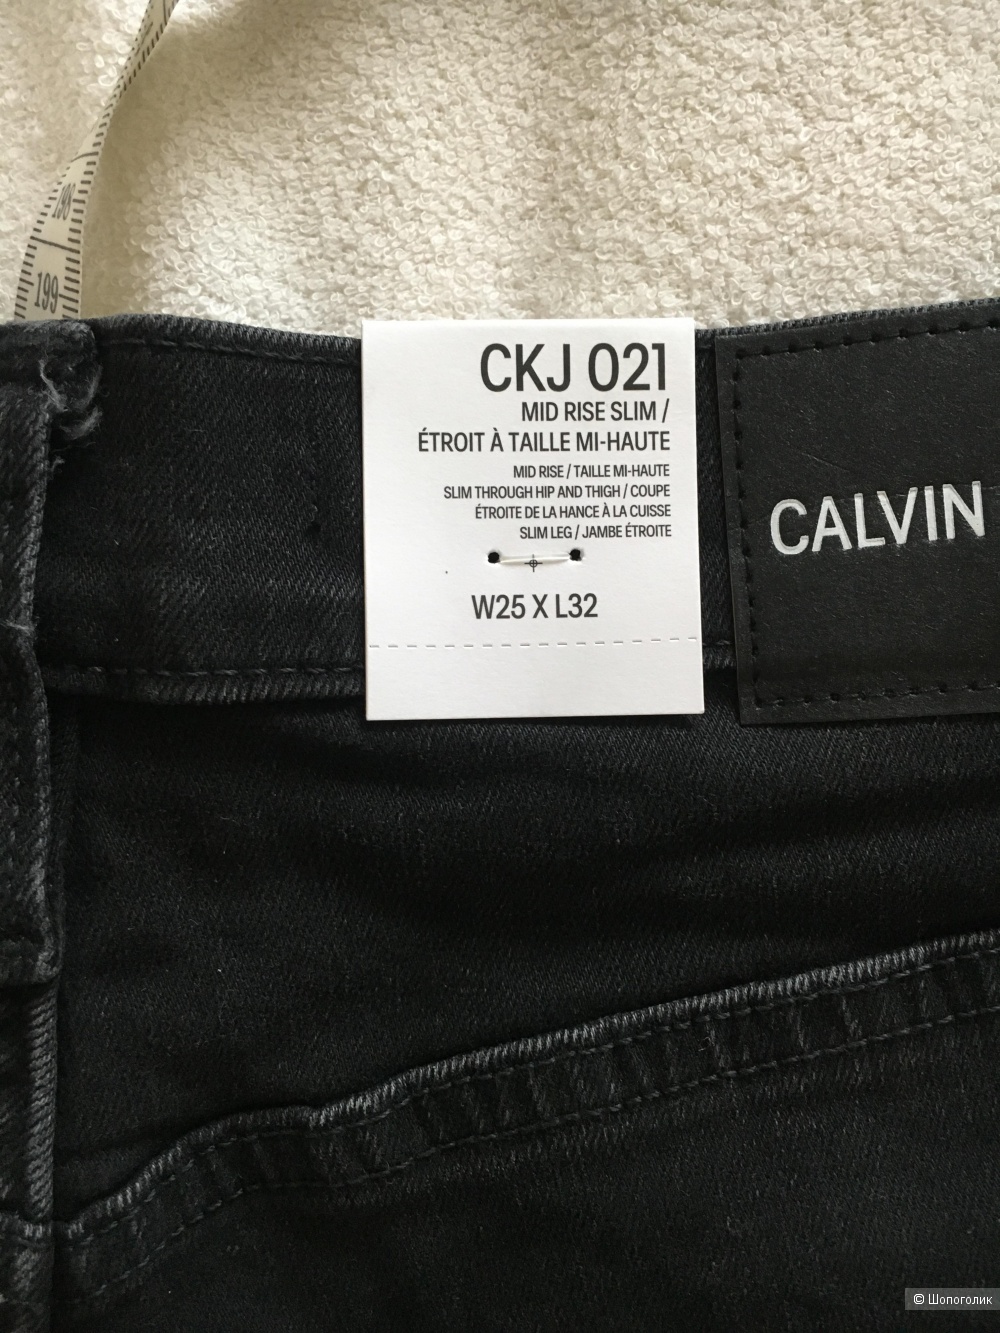 Джинсы чёрные Calvin Klein, размер 25 (рост 32)